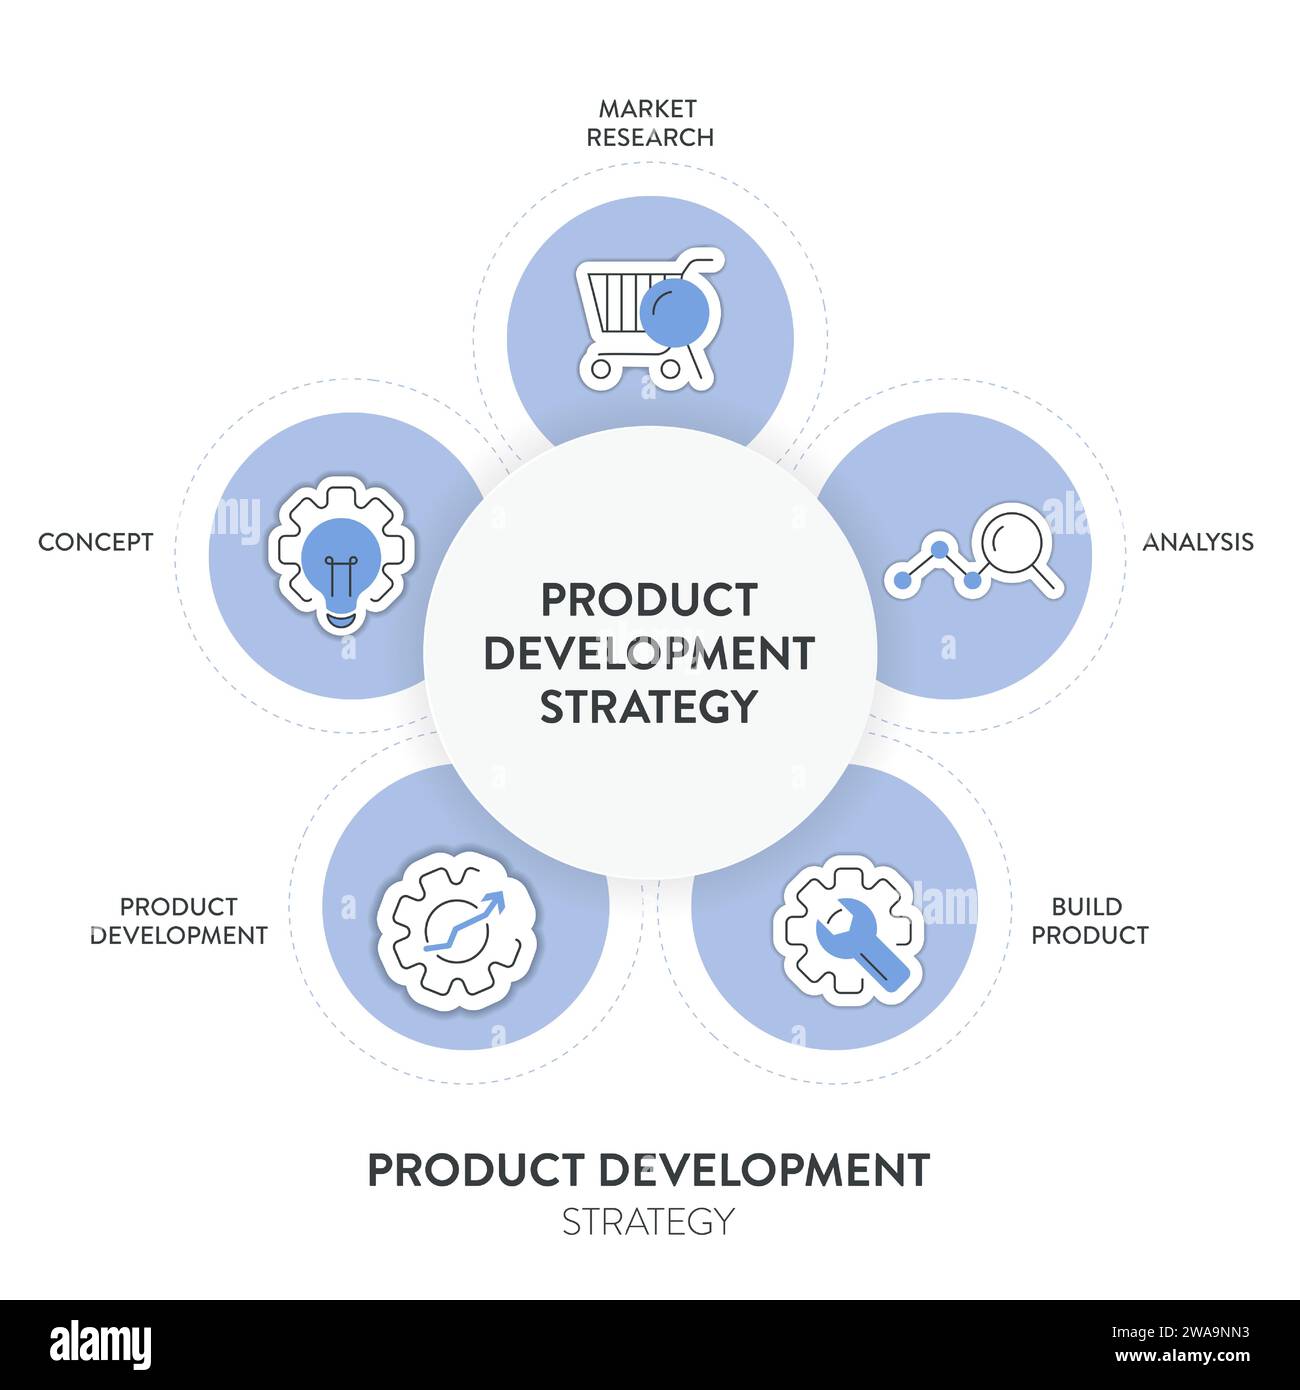 Il banner grafico infografico della strategia di sviluppo del prodotto con vettore di icone per la presentazione contiene ricerche di mercato, analisi, creazione di prodotti, sviluppo di prodotti Illustrazione Vettoriale